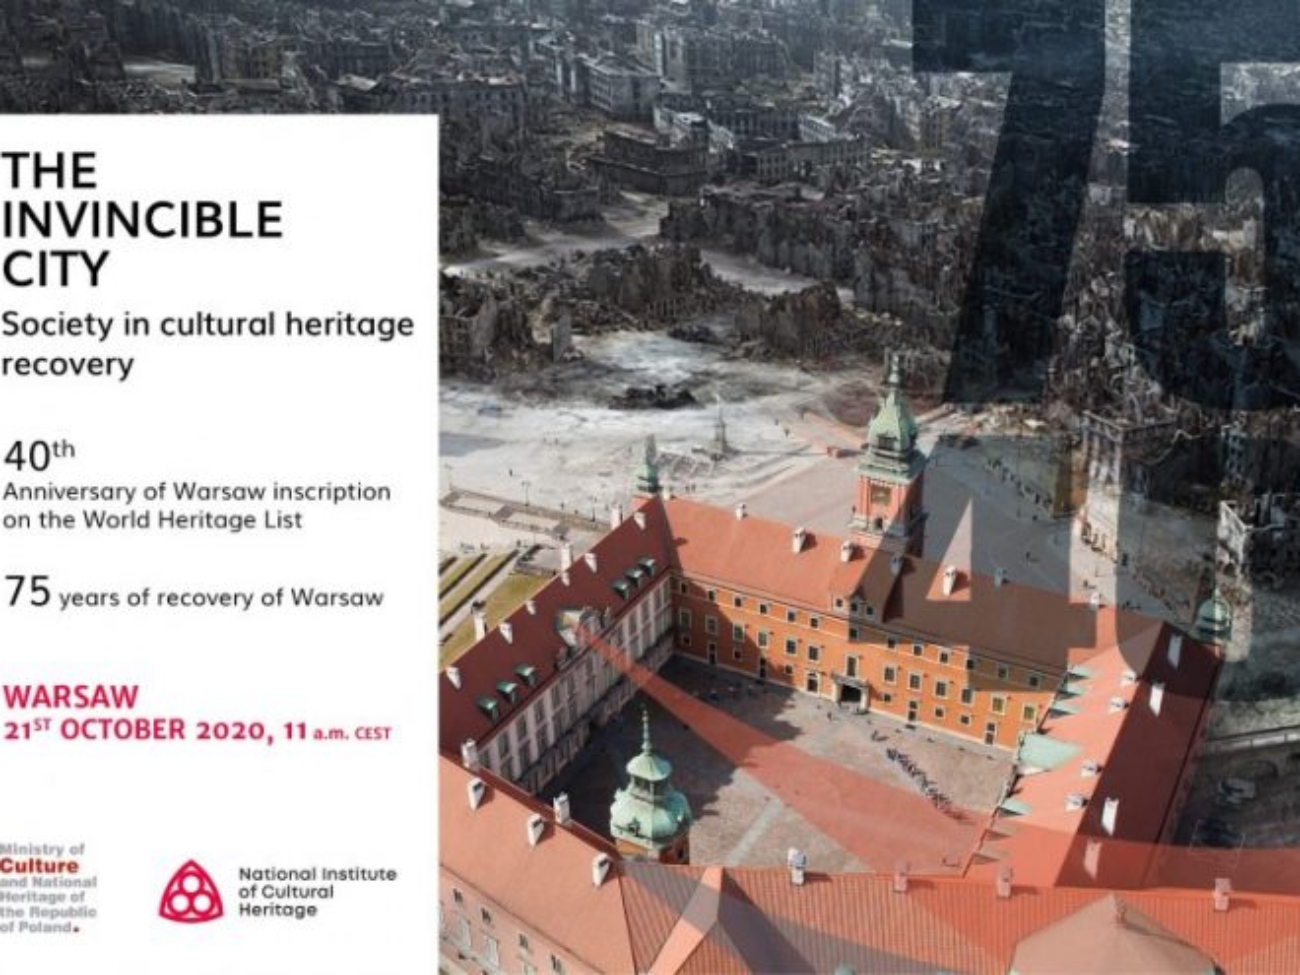 webinarium na 40 lecie wpisu warszawy na UNESCO - the invincible city - program